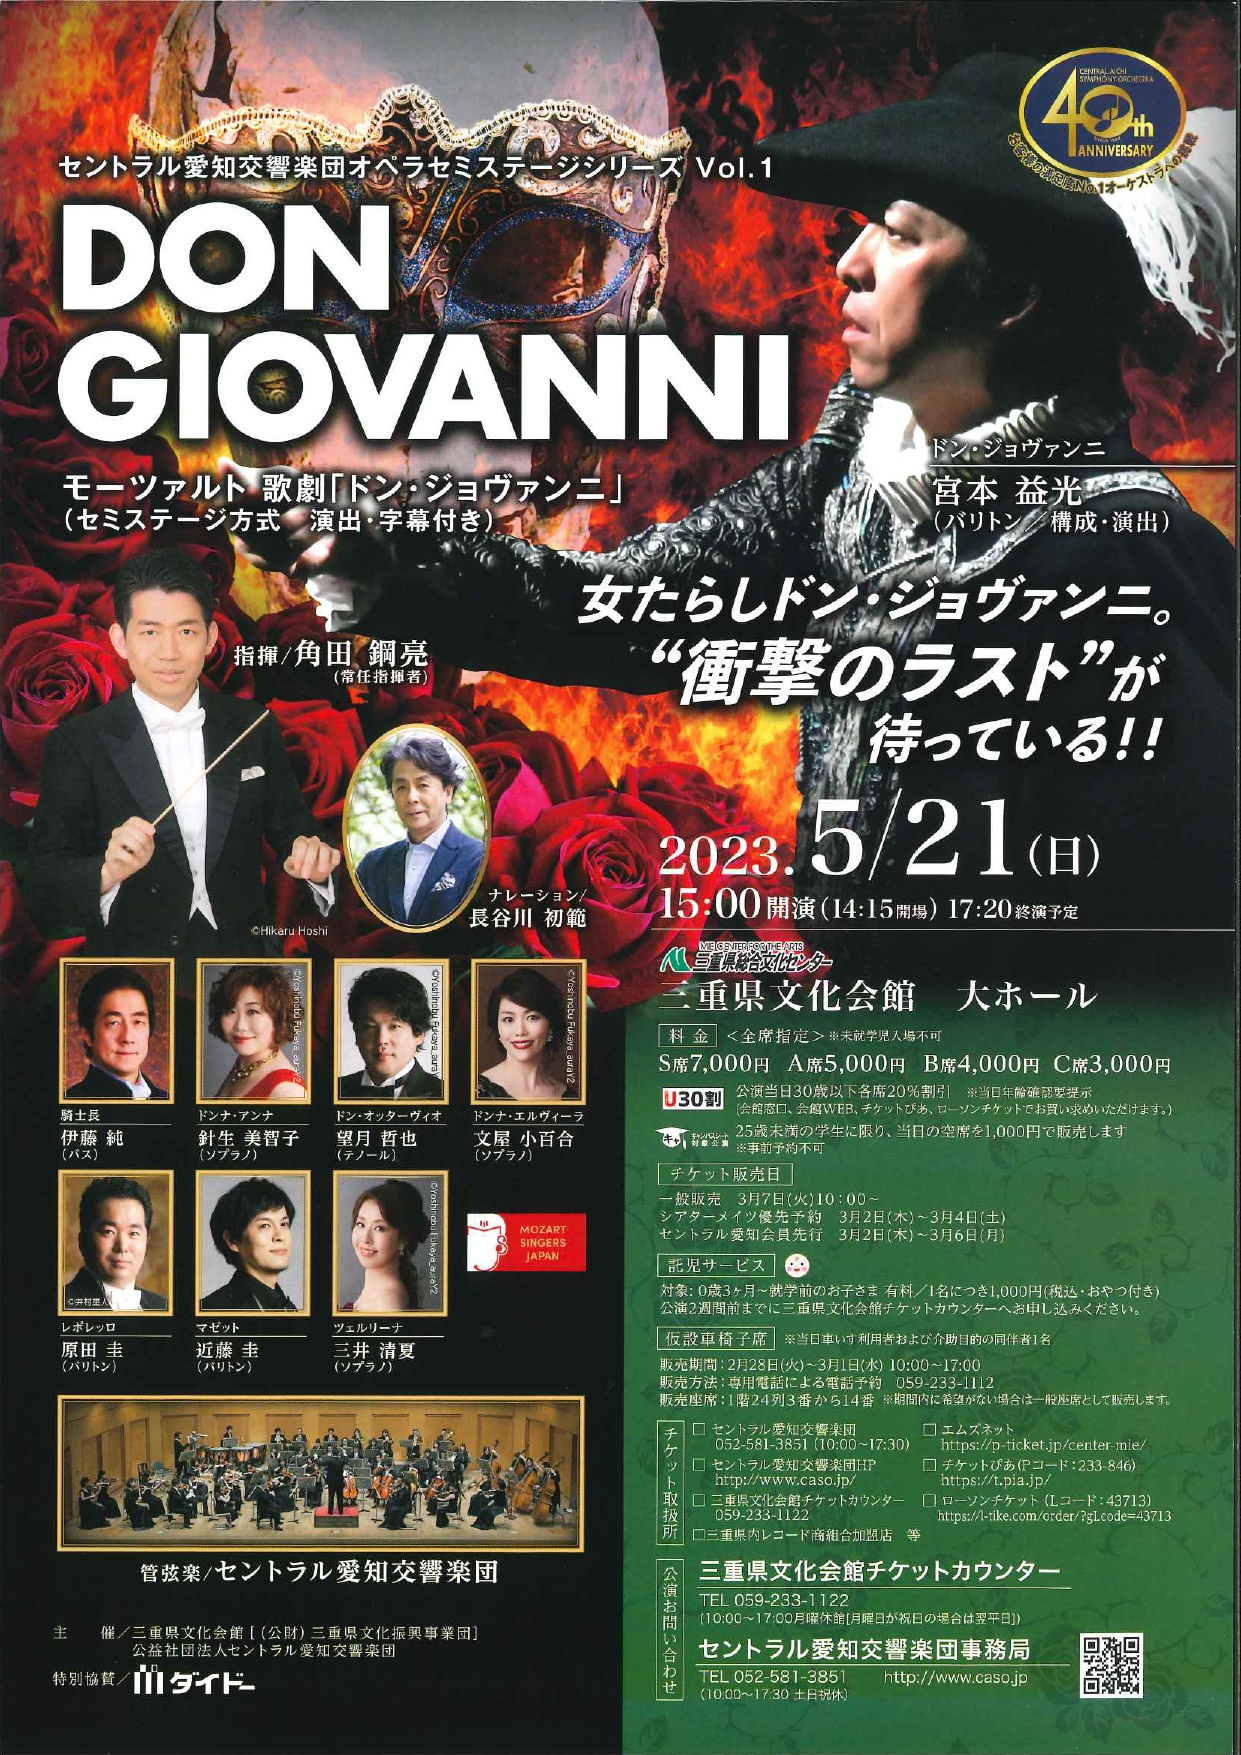 セントラル愛知交響楽団オペラセミステージシリーズVol.1のフライヤー画像